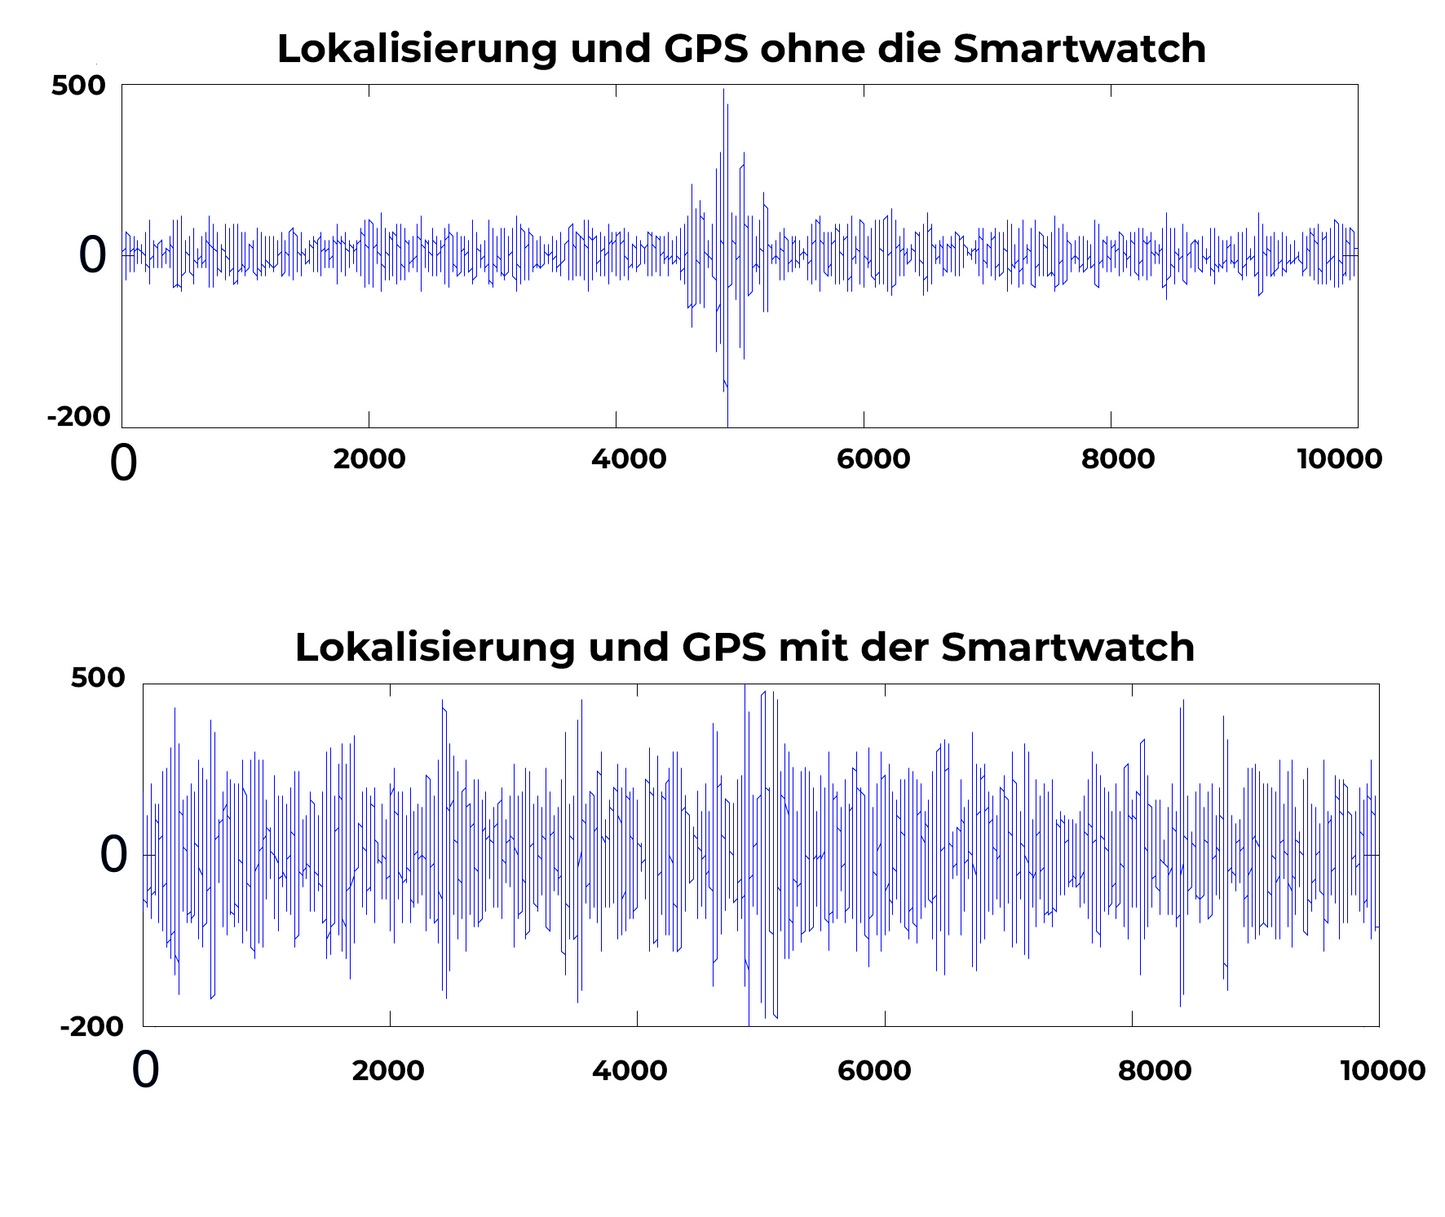 iRosesilk™ PRO-AI-Chips  Anti Monitoring Signalstörung Smartwatch